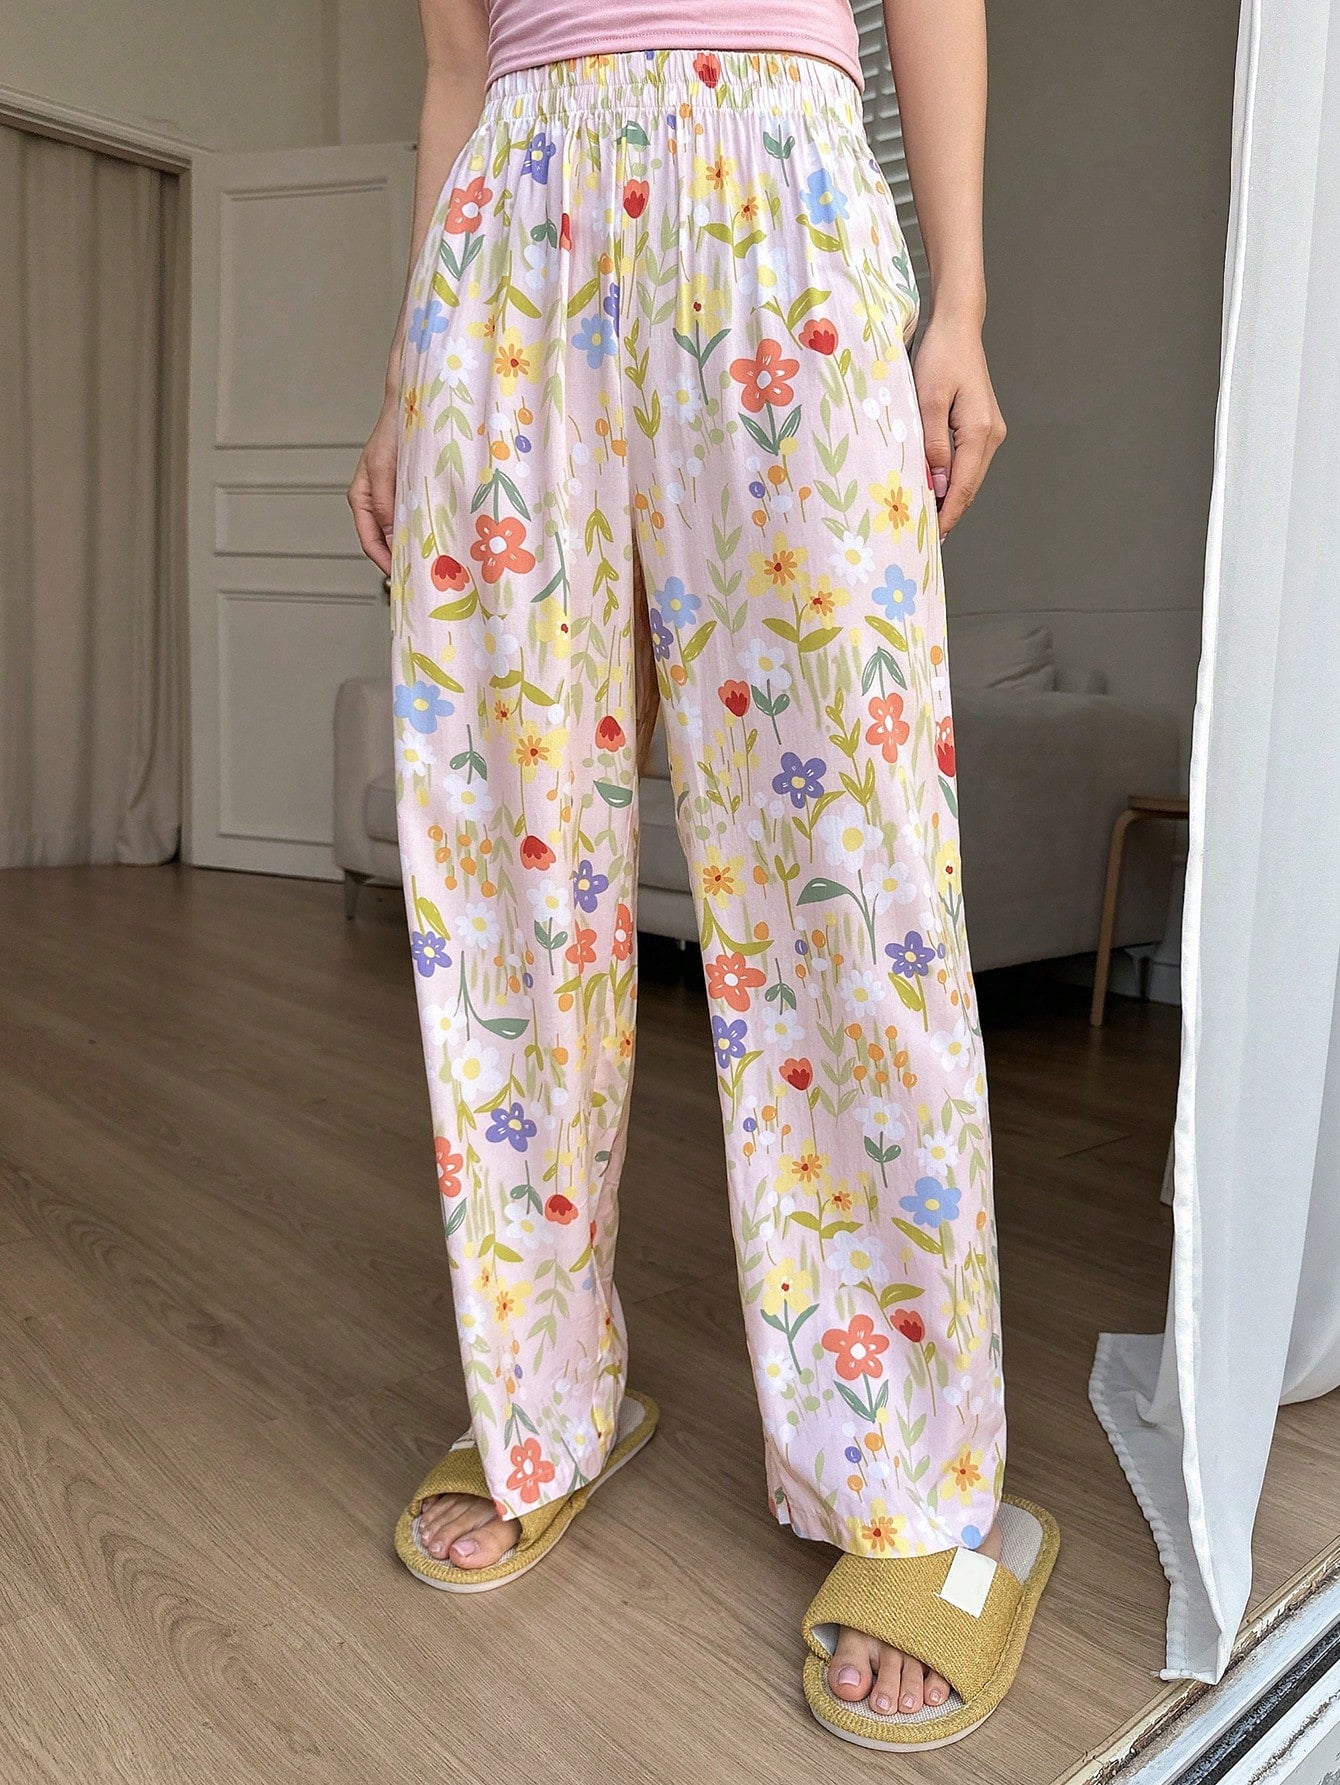 Ladies" Fresh Floral Print Casual Long Pants Sleepwear Bottoms